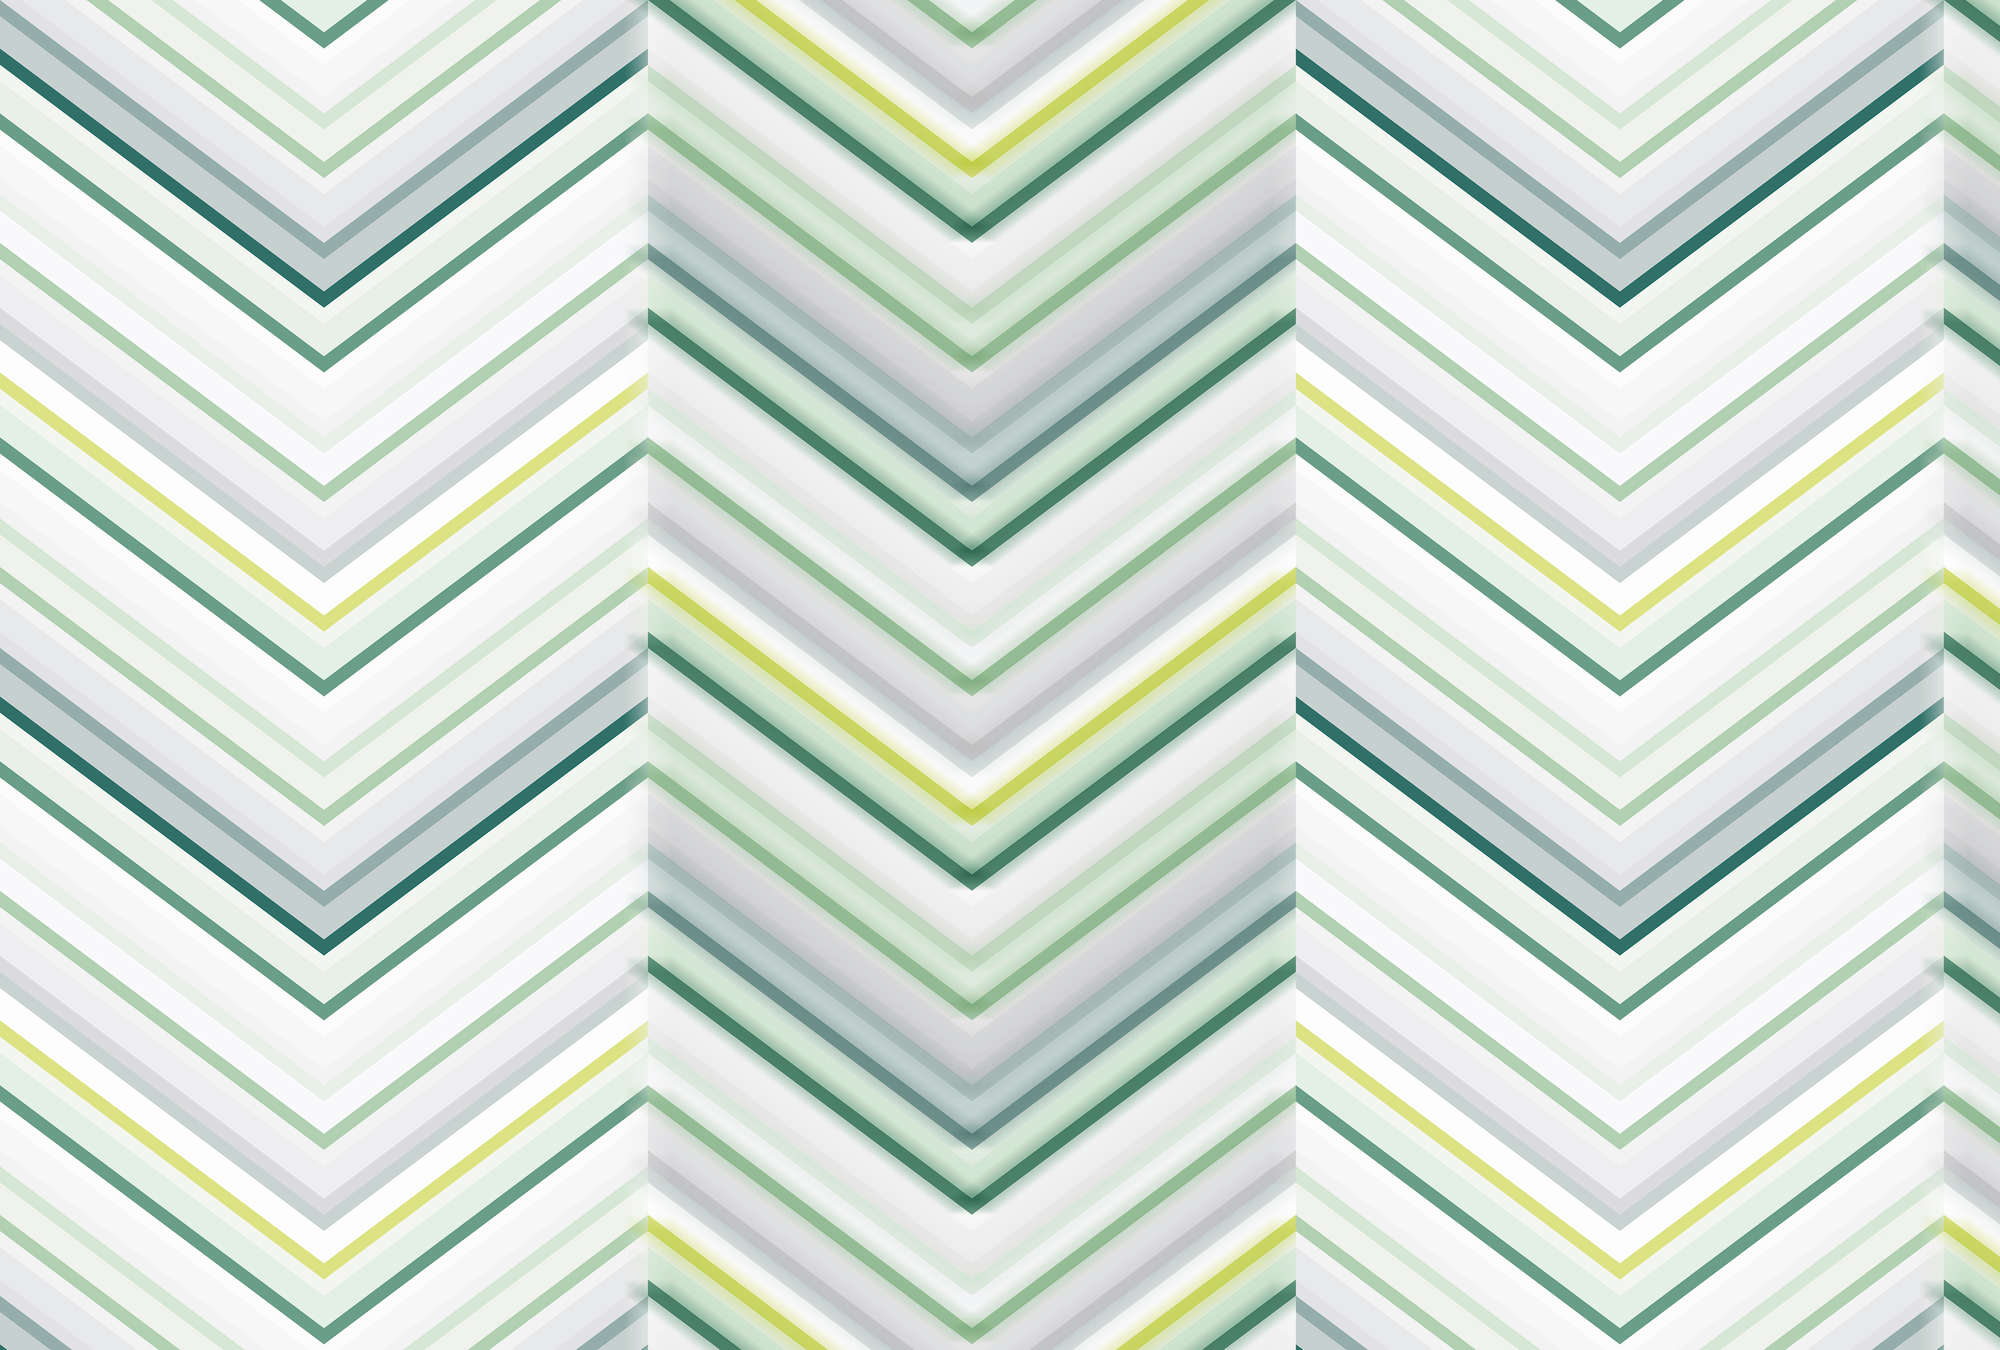             Papier peint zigzag coloré & design de lignes - gris, jaune, vert
        